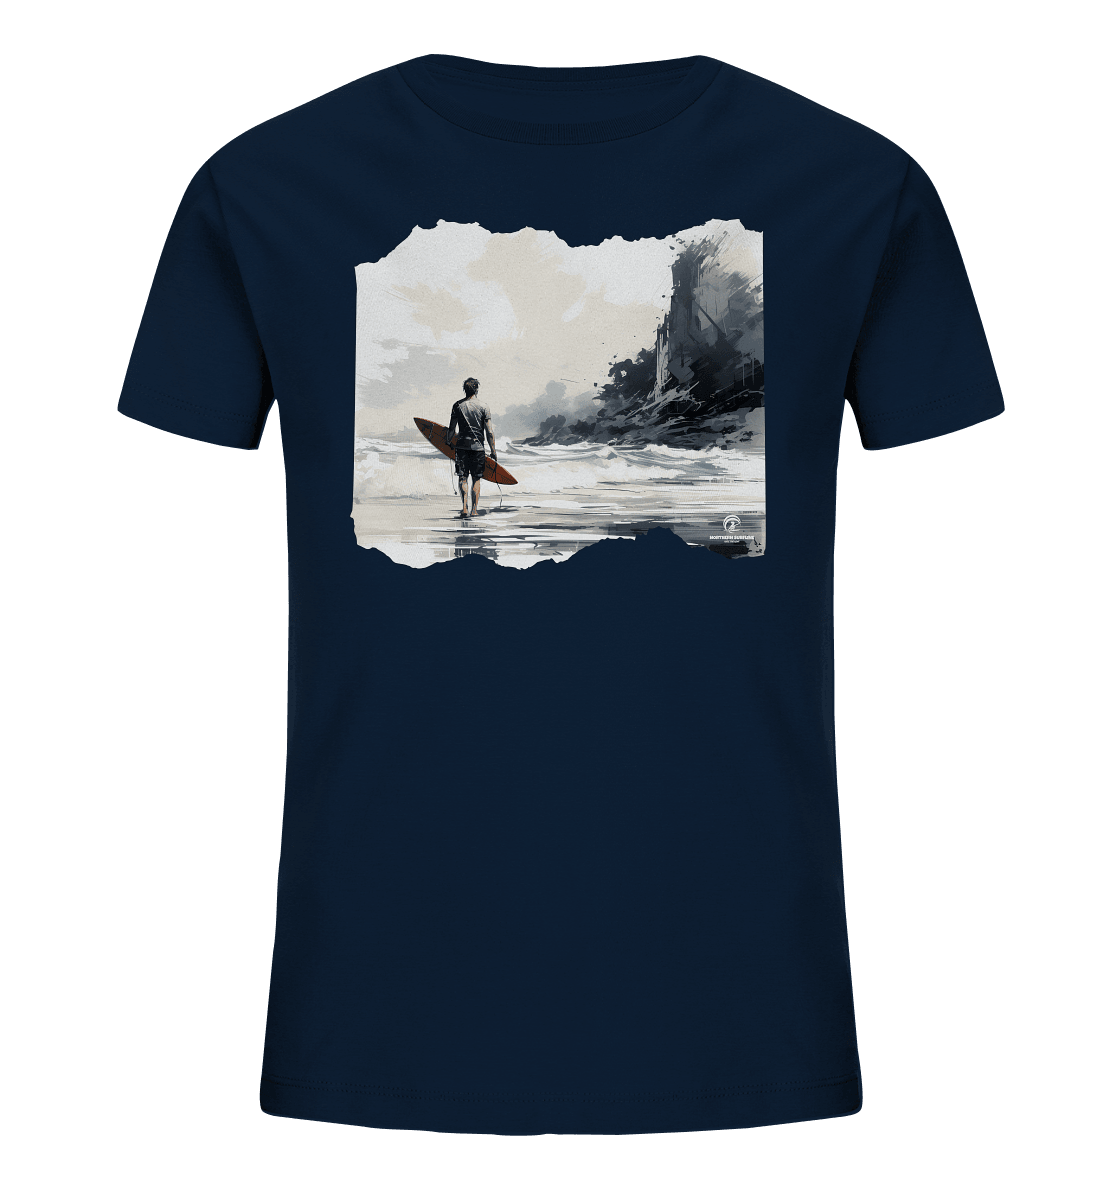 Northern Surfline - Kids Organic Shirt - Snapshirts